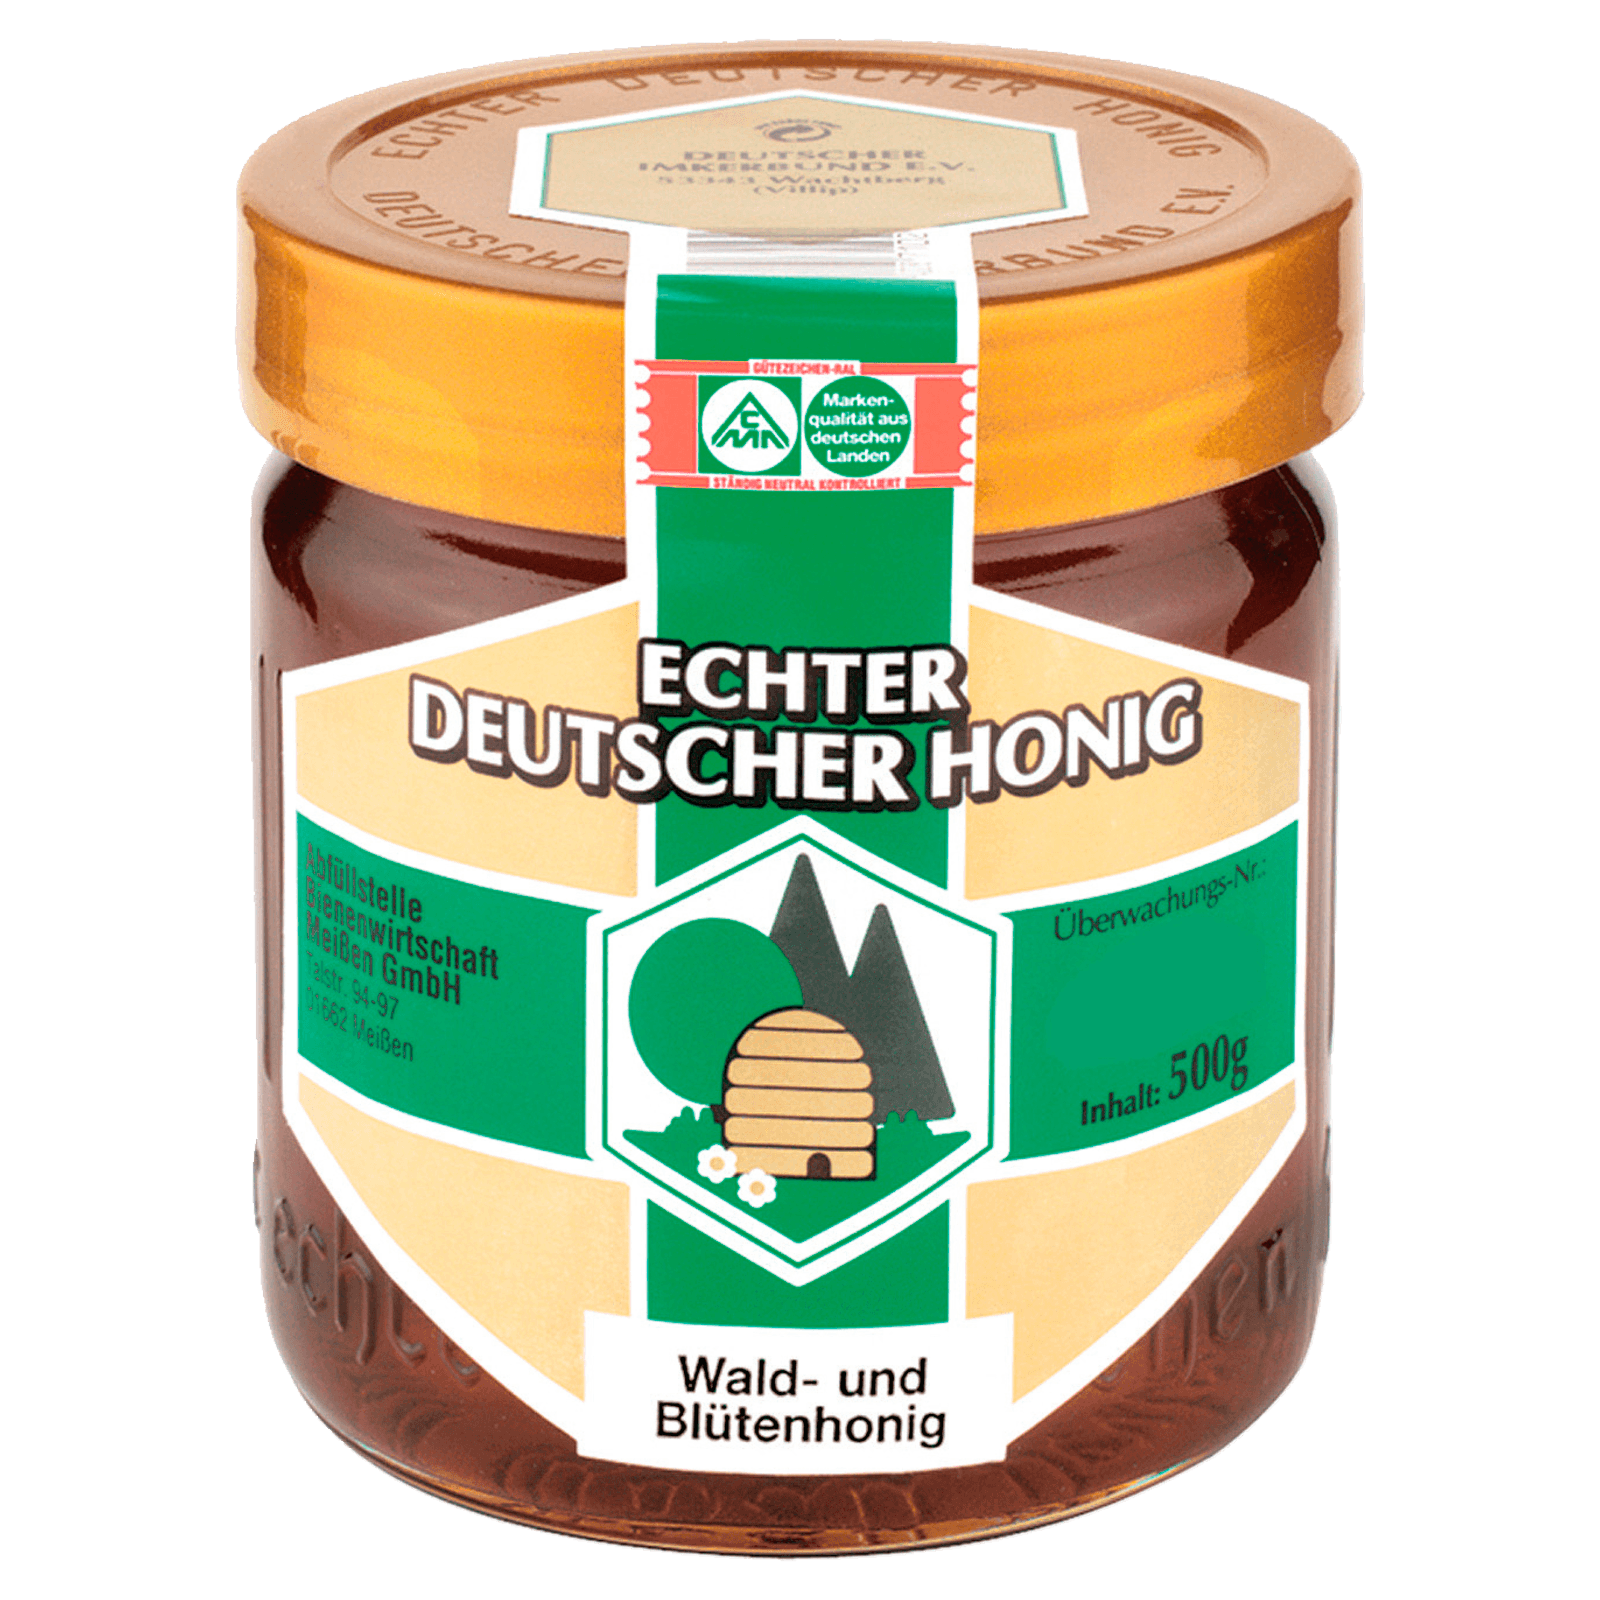 Echter Deutscher Honig Wald Blutenhonig 500g Bei Rewe Online Bestellen